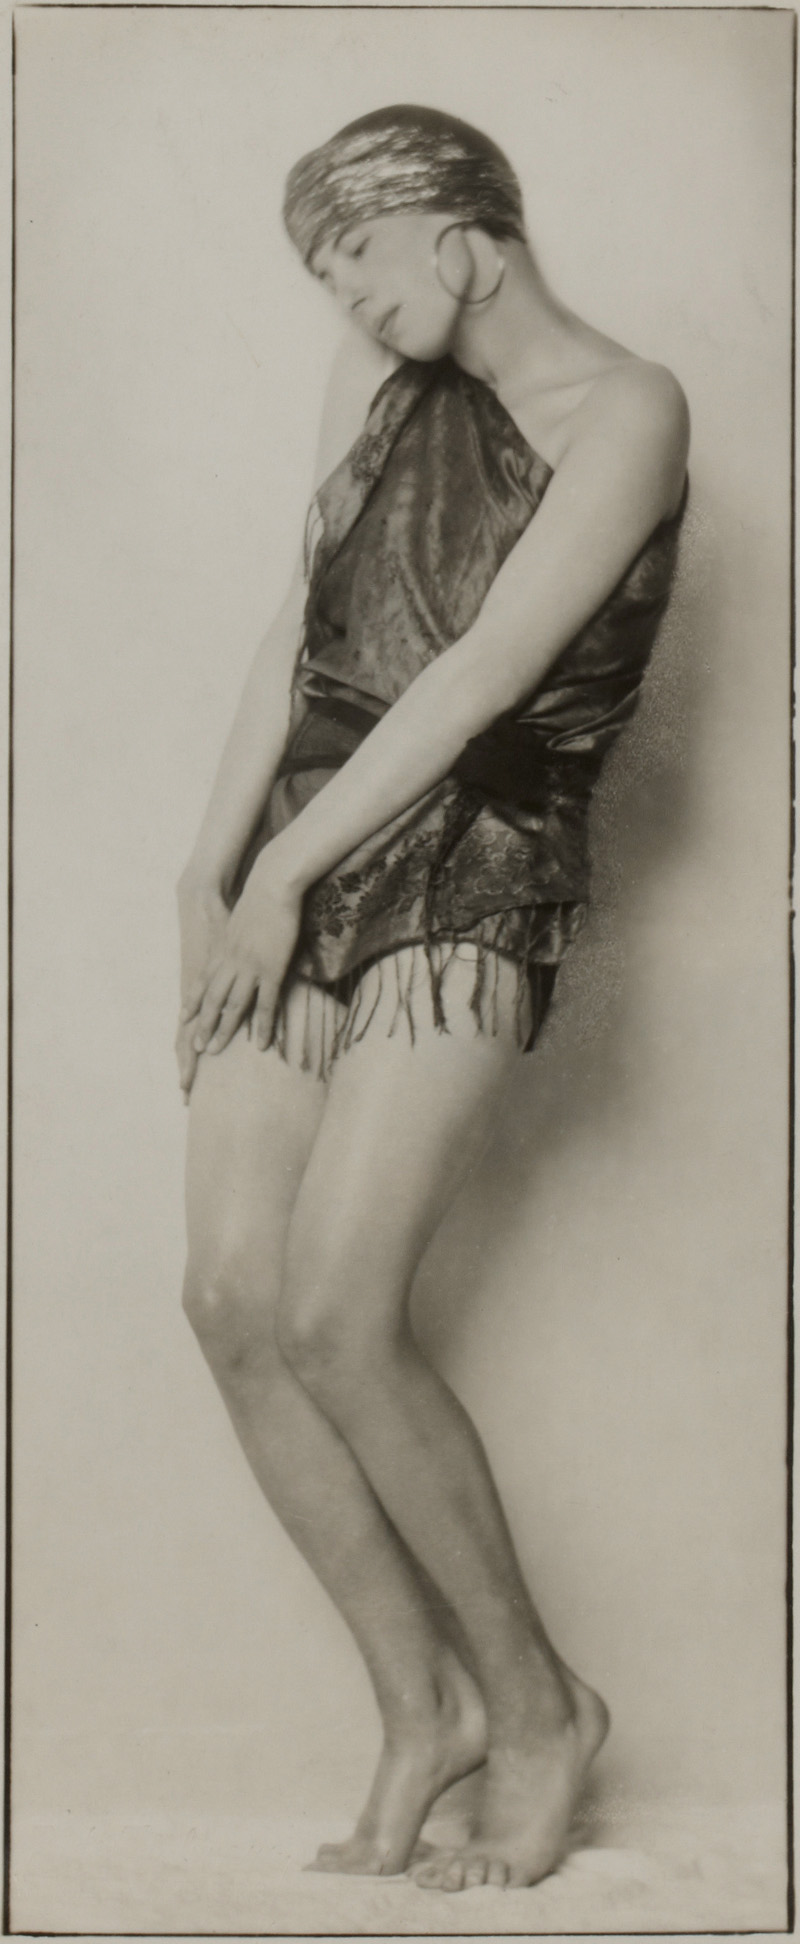 The dancer Tilly Losch, Trude Fleischmann (1895-1990)